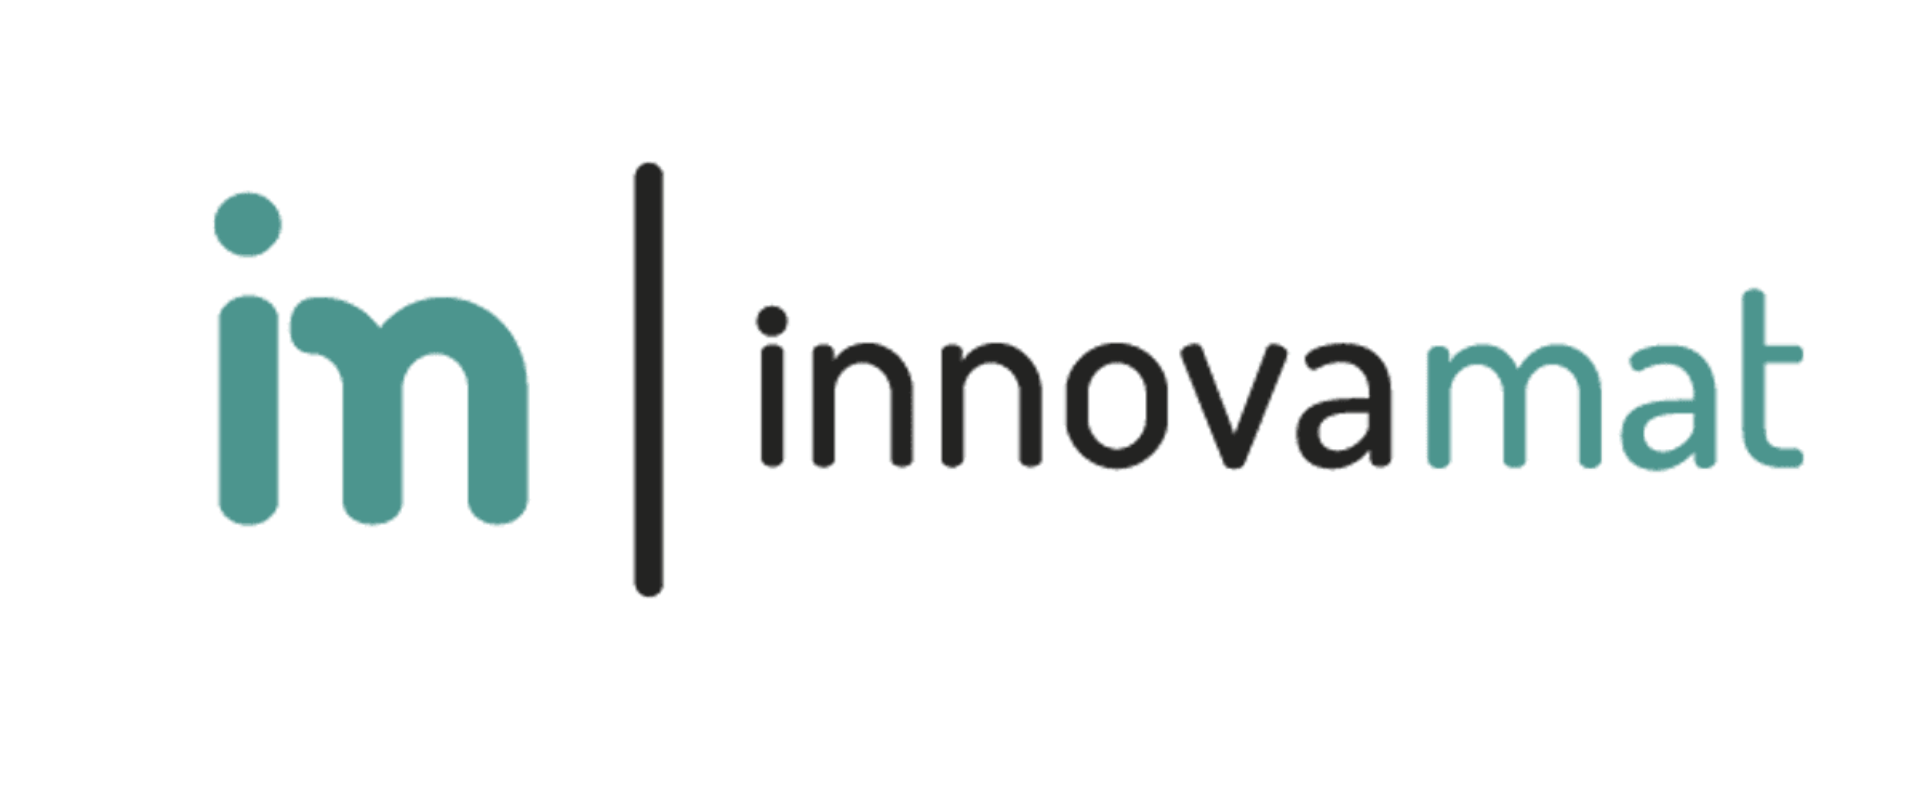 Proyecto Innovamat - Sesión informativa